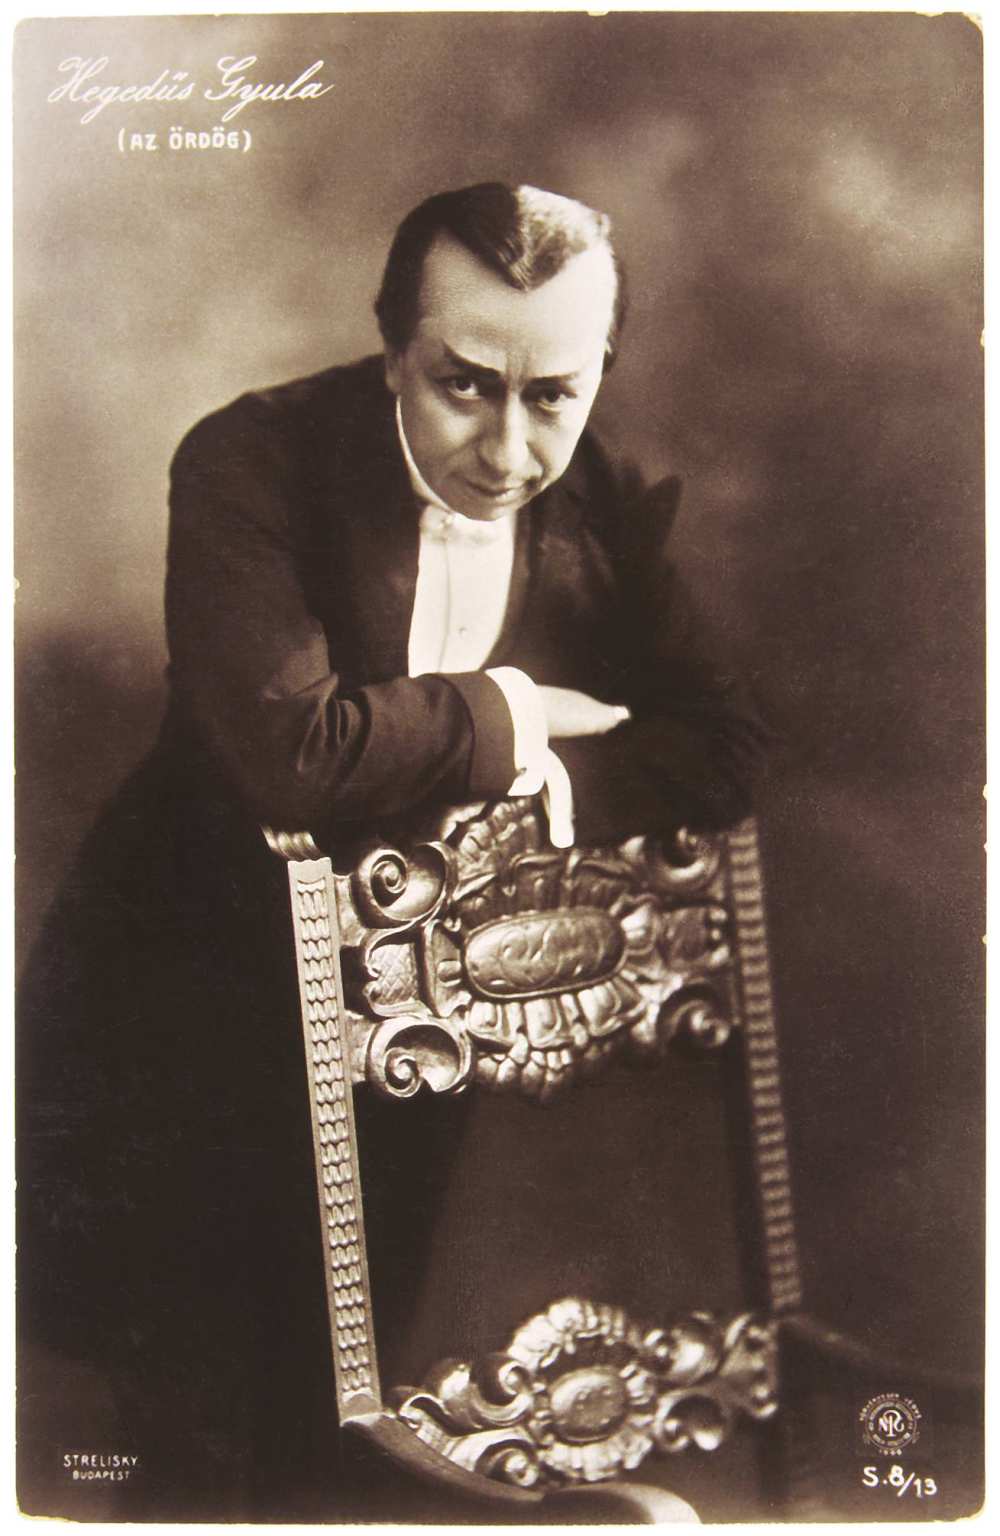 Hegedüs Gyula Az ördög címszerepében, Vígszínház, 1907. Strelisky felvétele – Színháztörténeti és Zeneműtár